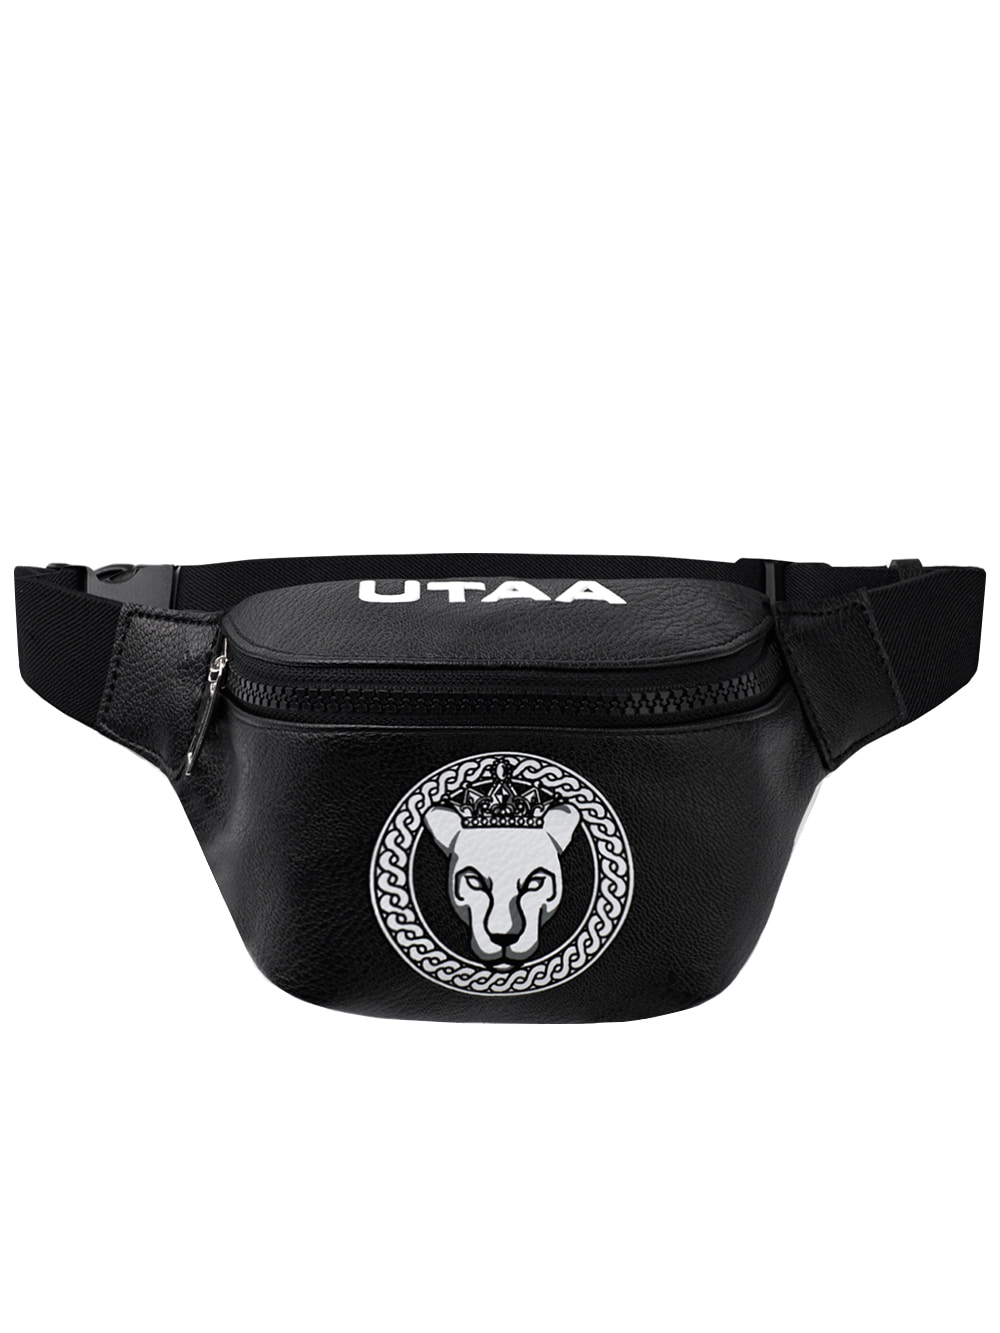 UTAA Scudo Ring Panther Belt Bag : Black(UD0GAU248BK)